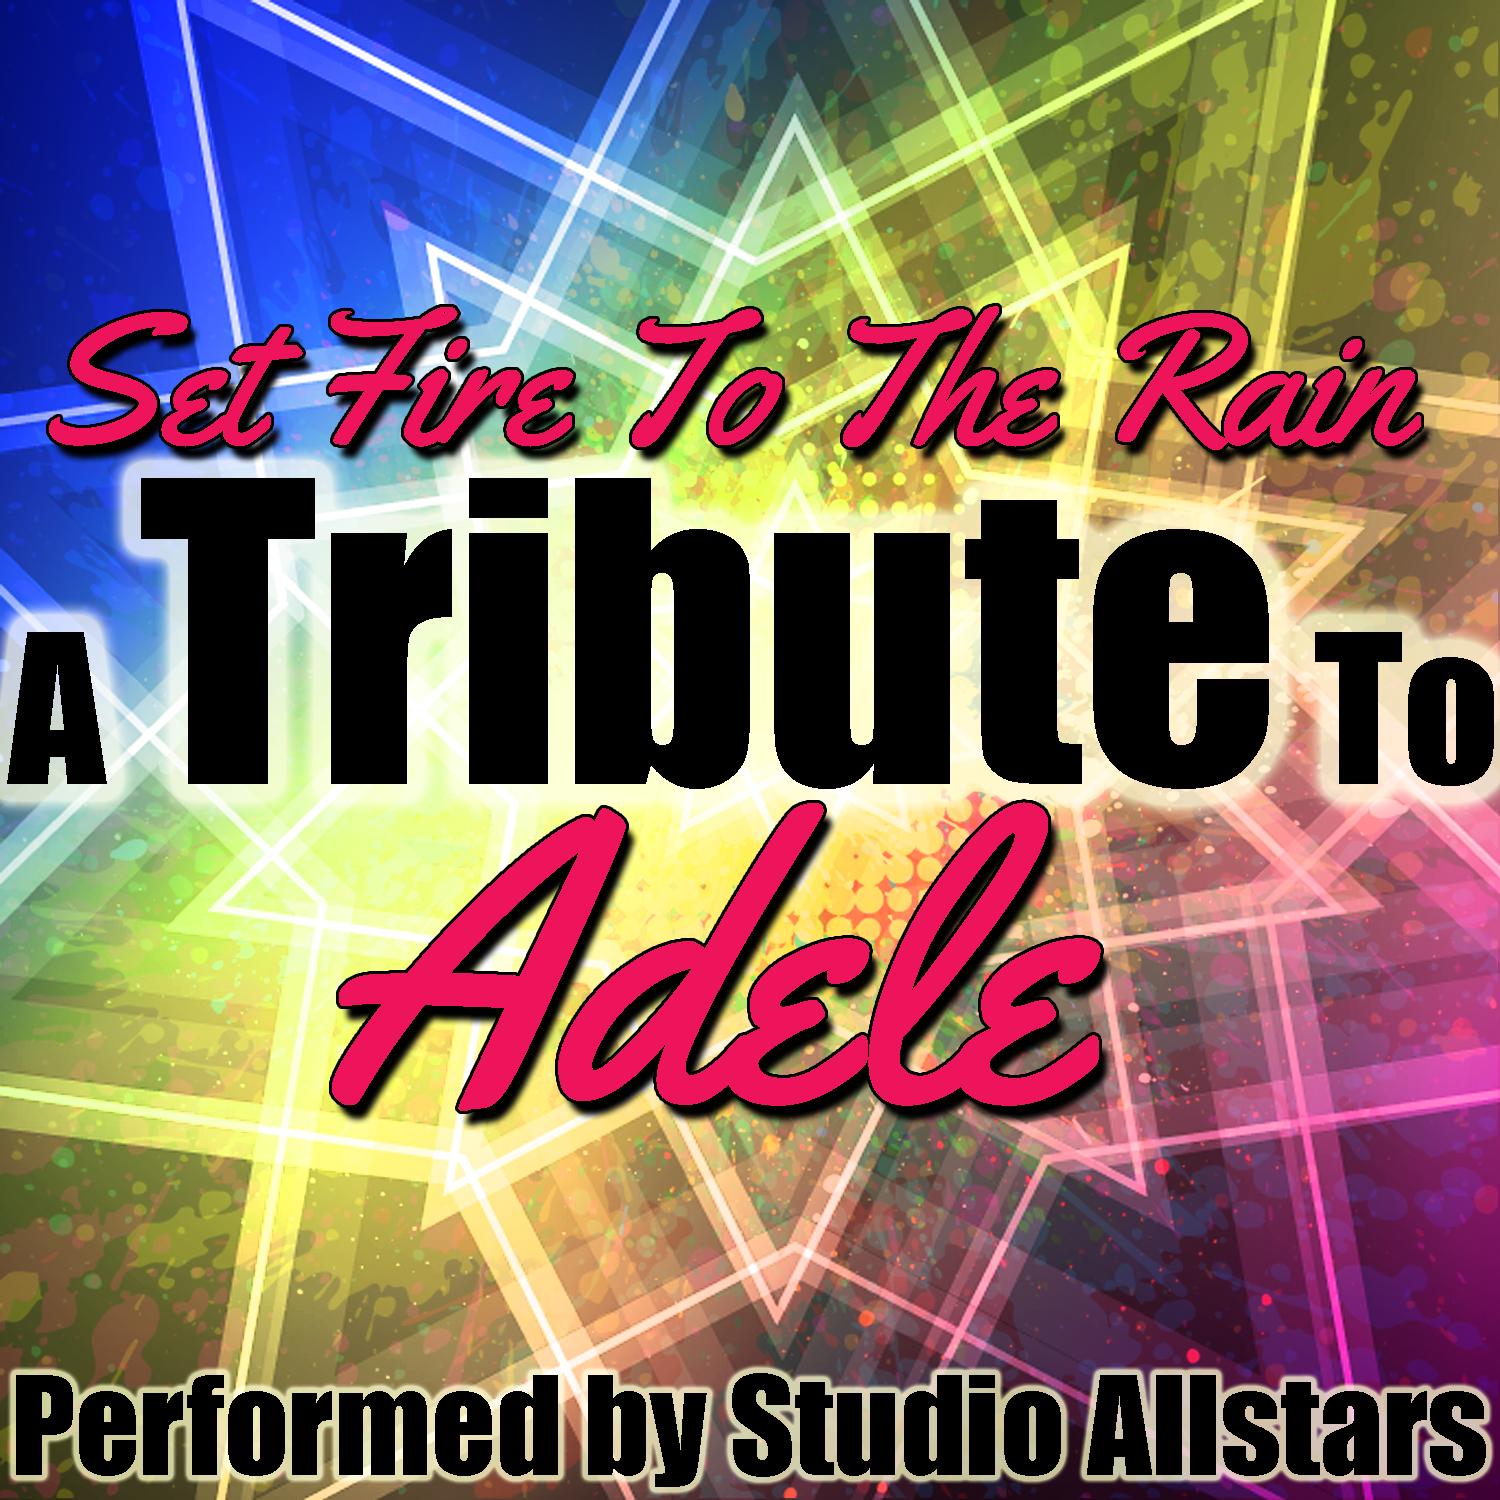 Set Fire to the Rain (A Tribute to Adele) - Single